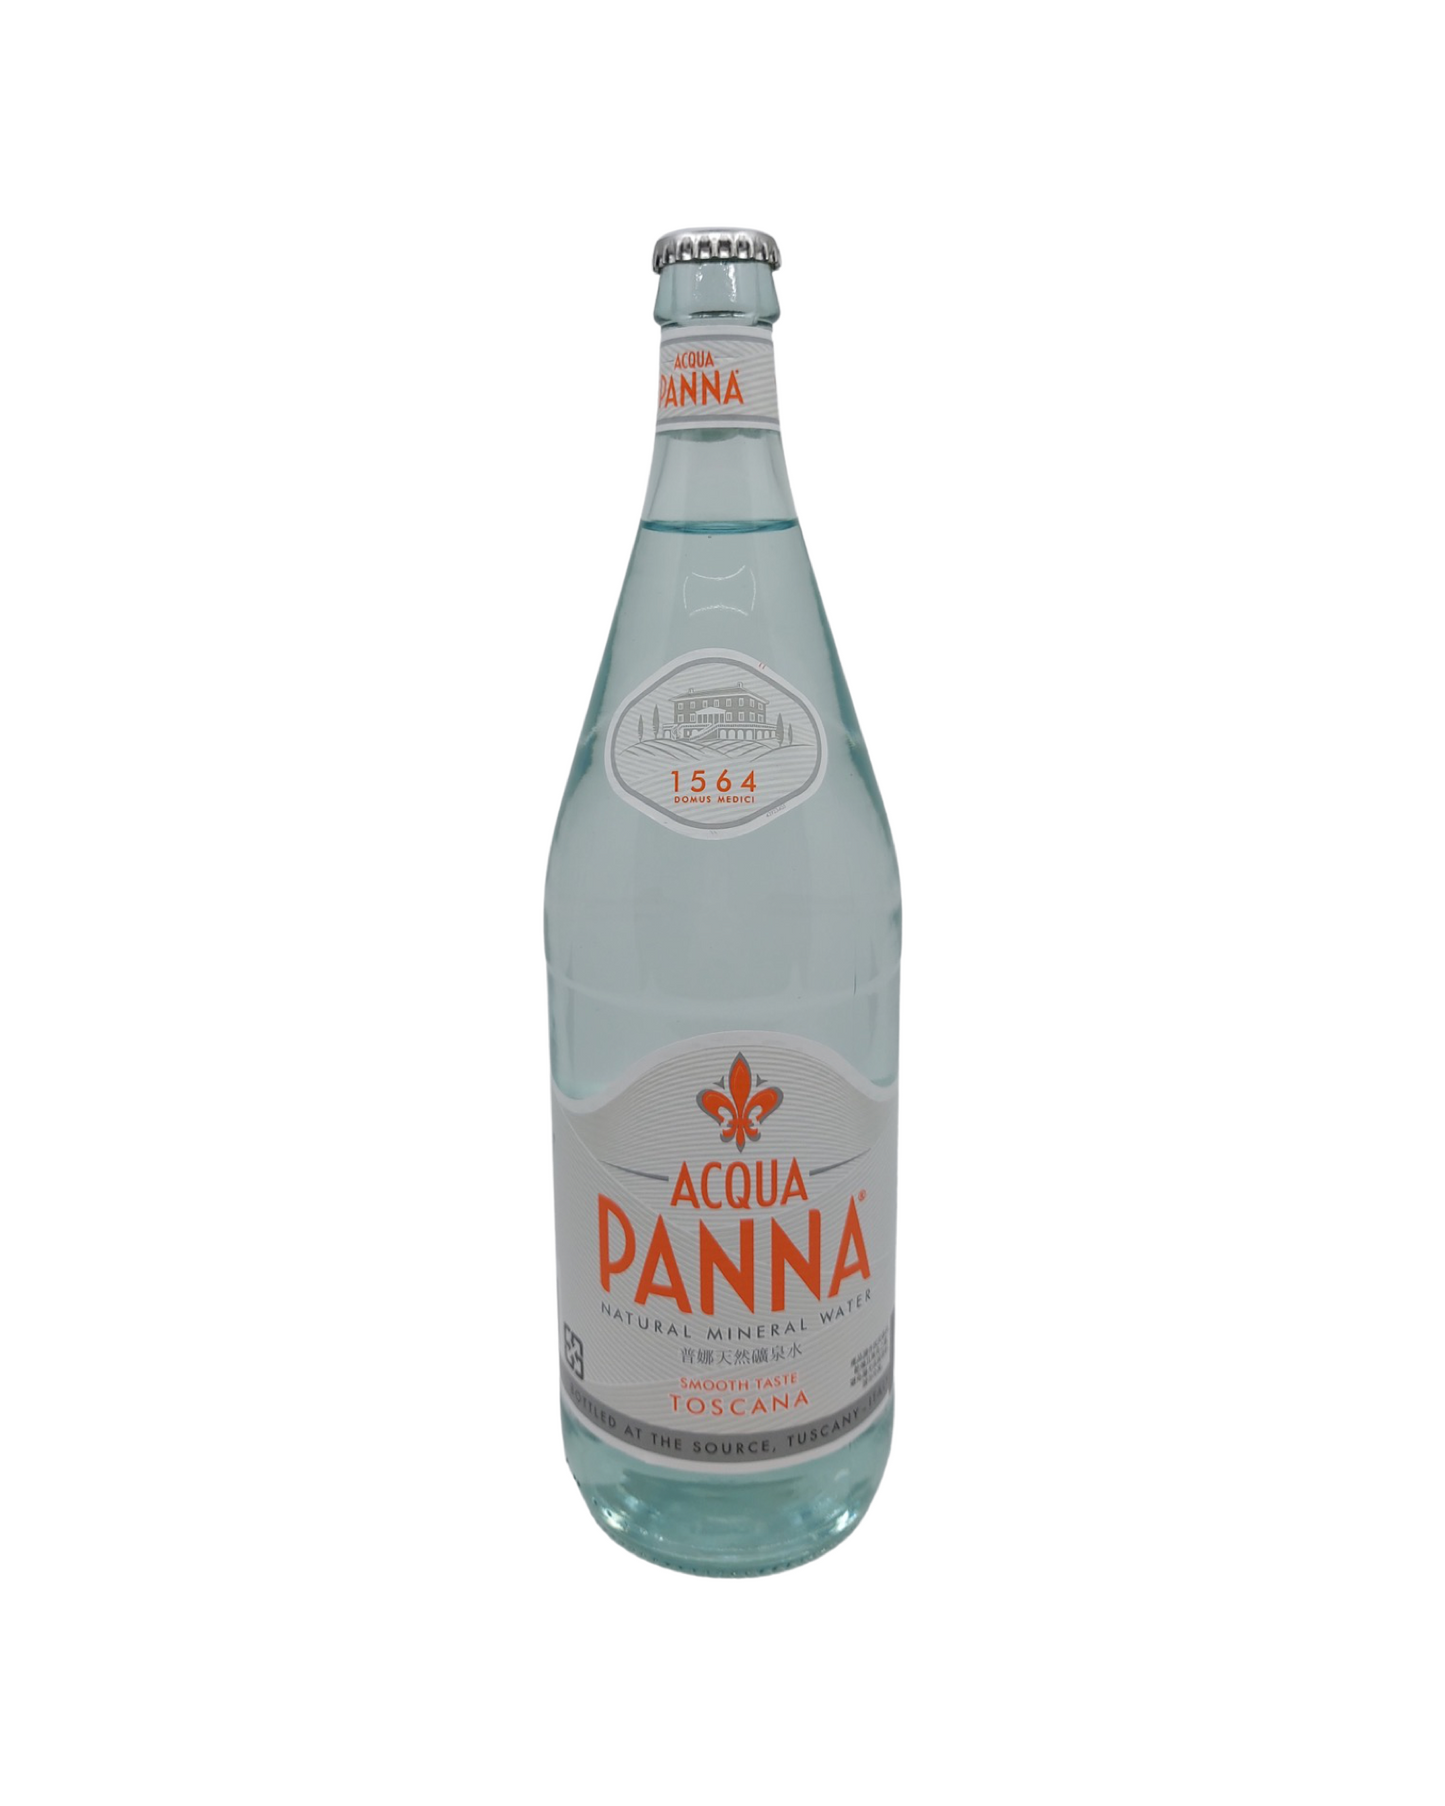 Aqua Panna - still (500 ml)